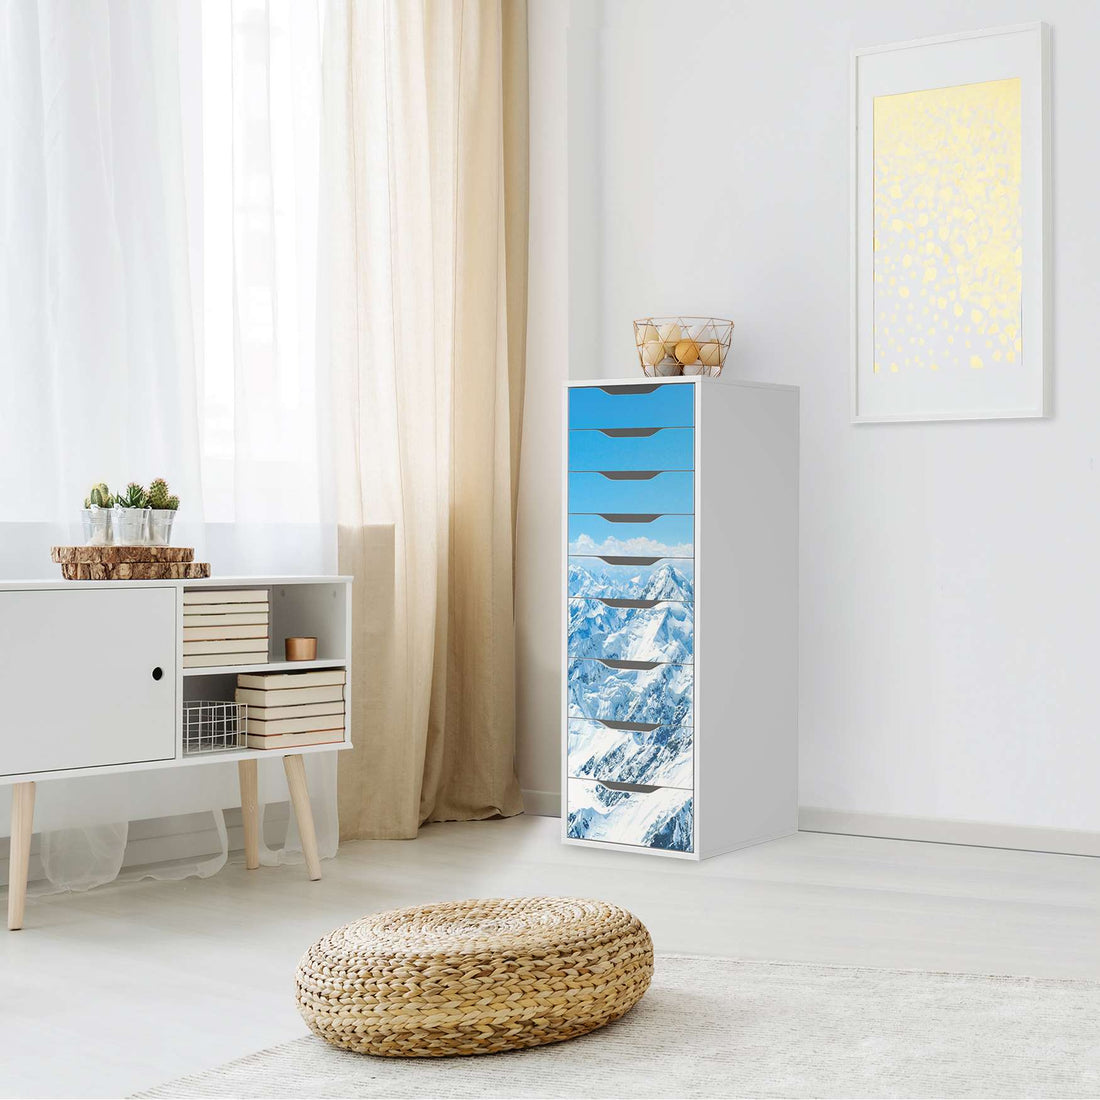 Folie für Möbel Himalaya - IKEA Alex 9 Schubladen - Wohnzimmer